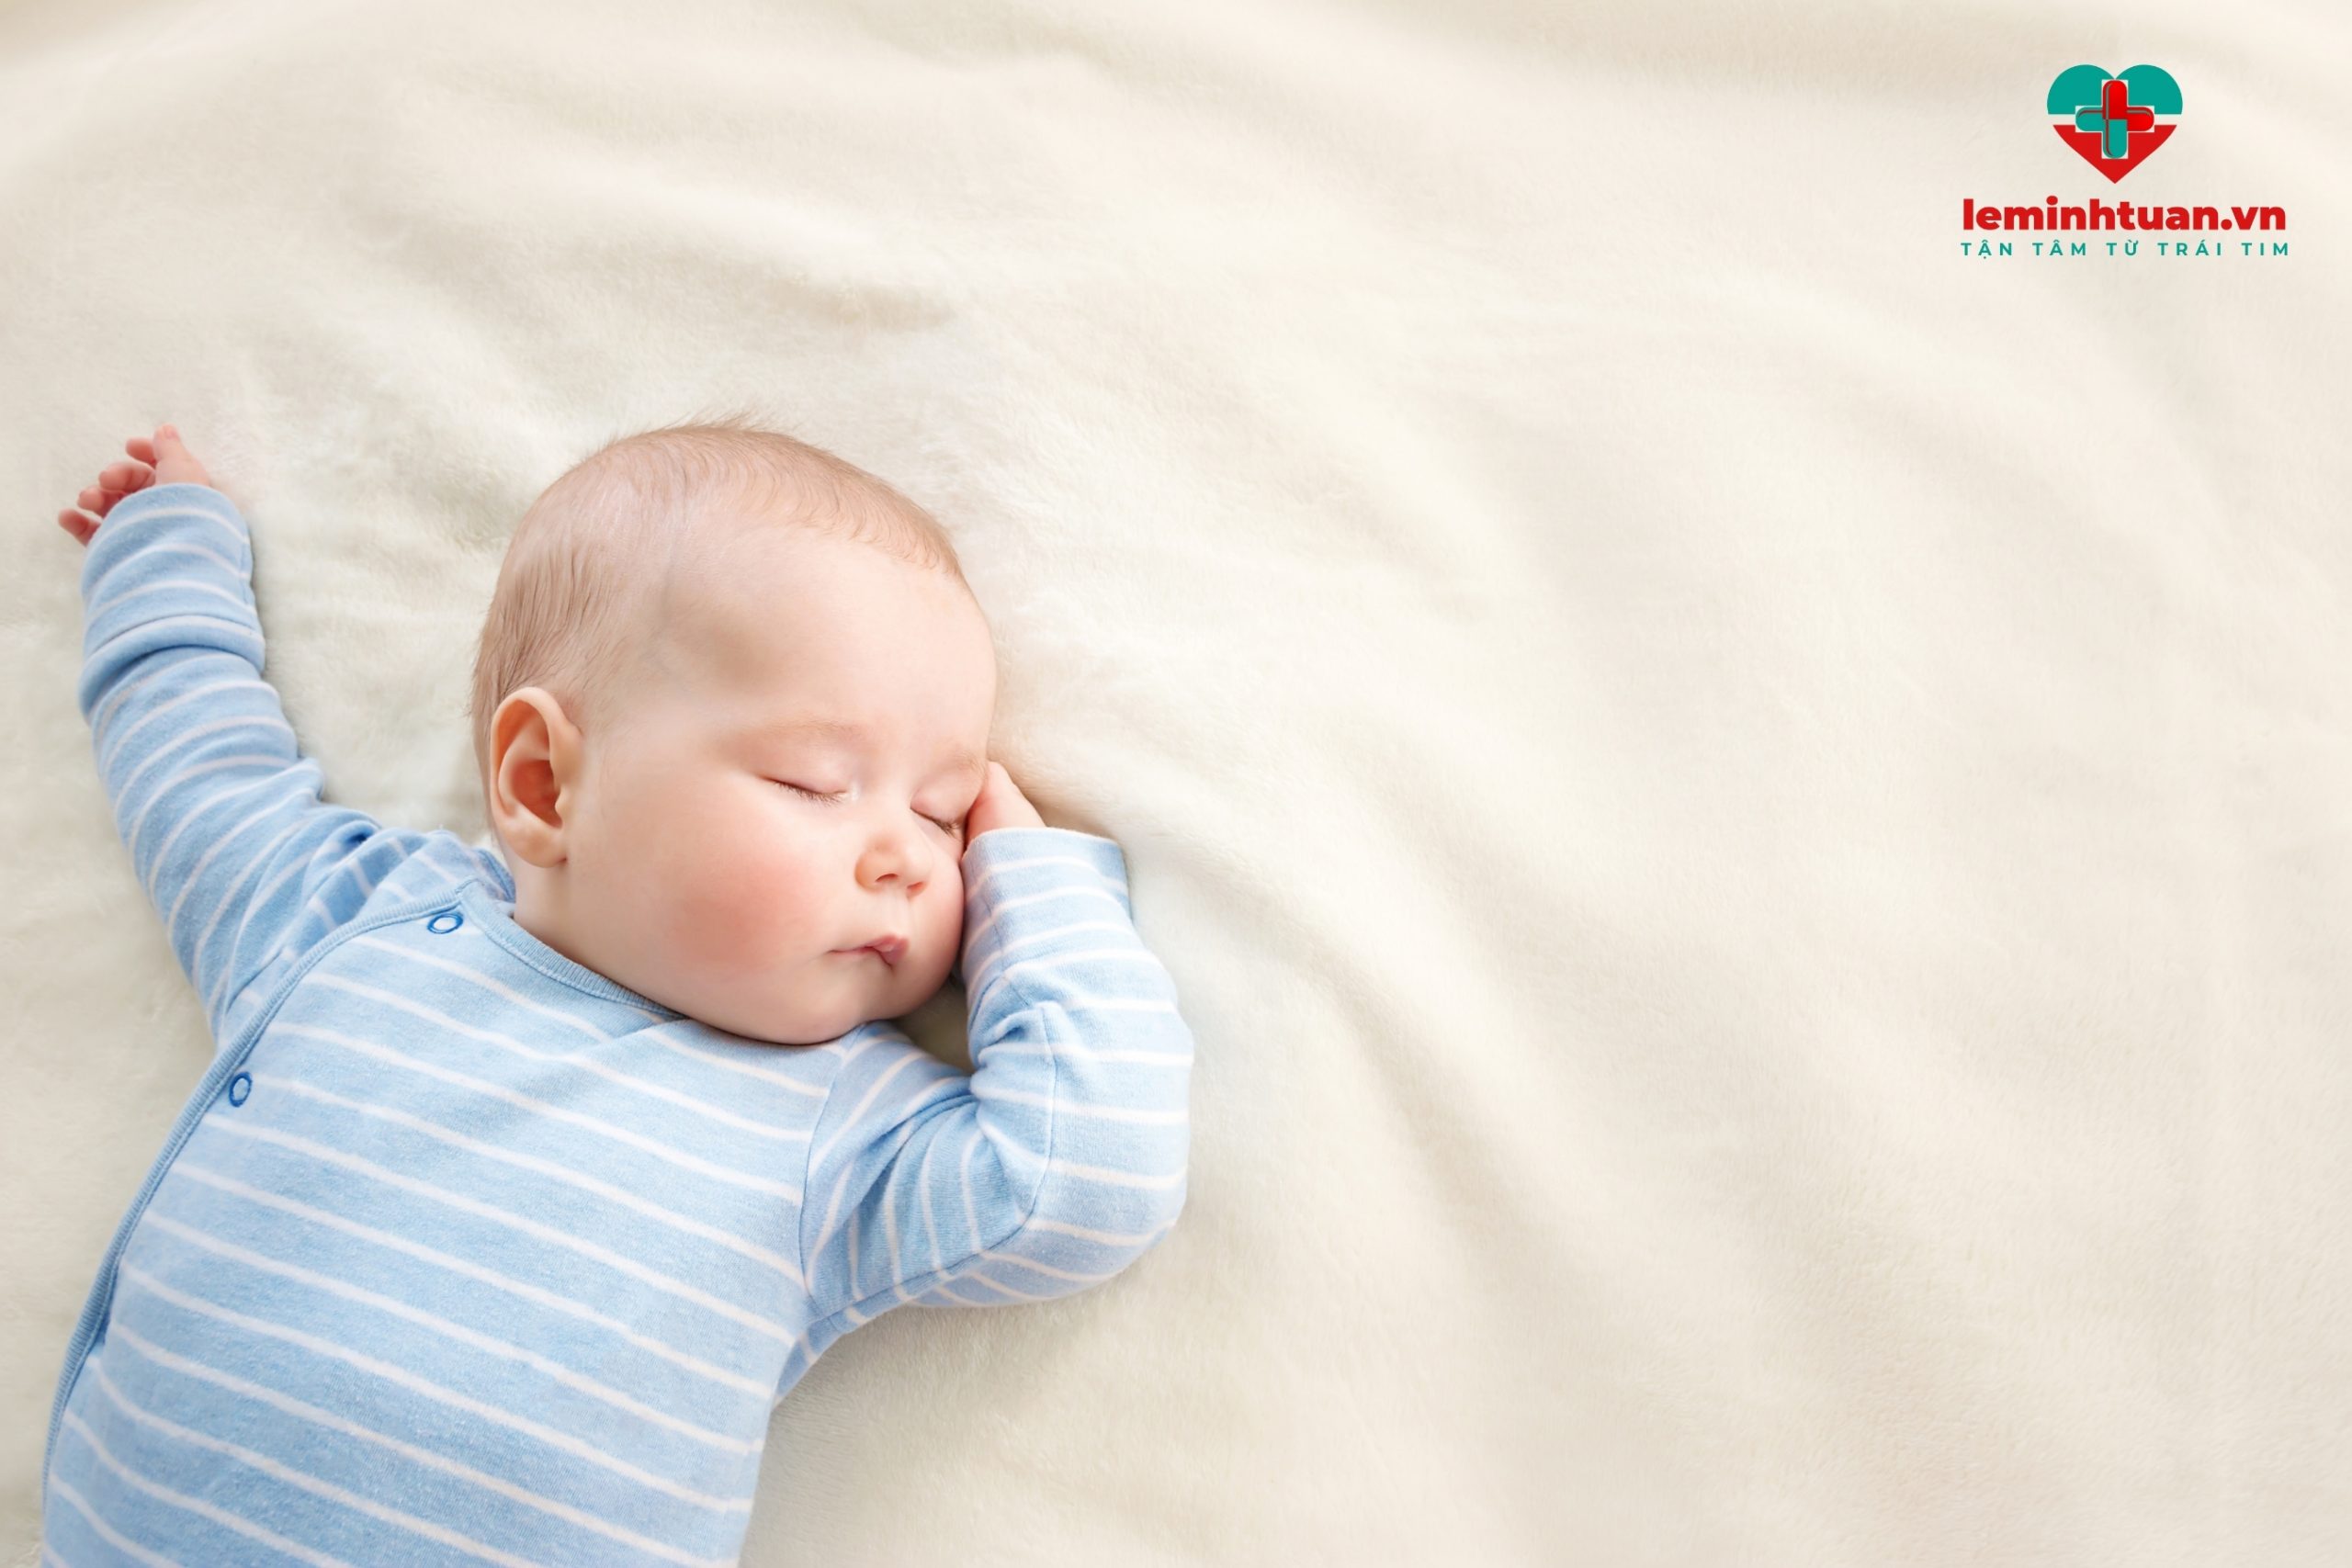 Giấc ngủ giúp trẻ cải thiện chiều cao hiệu quả